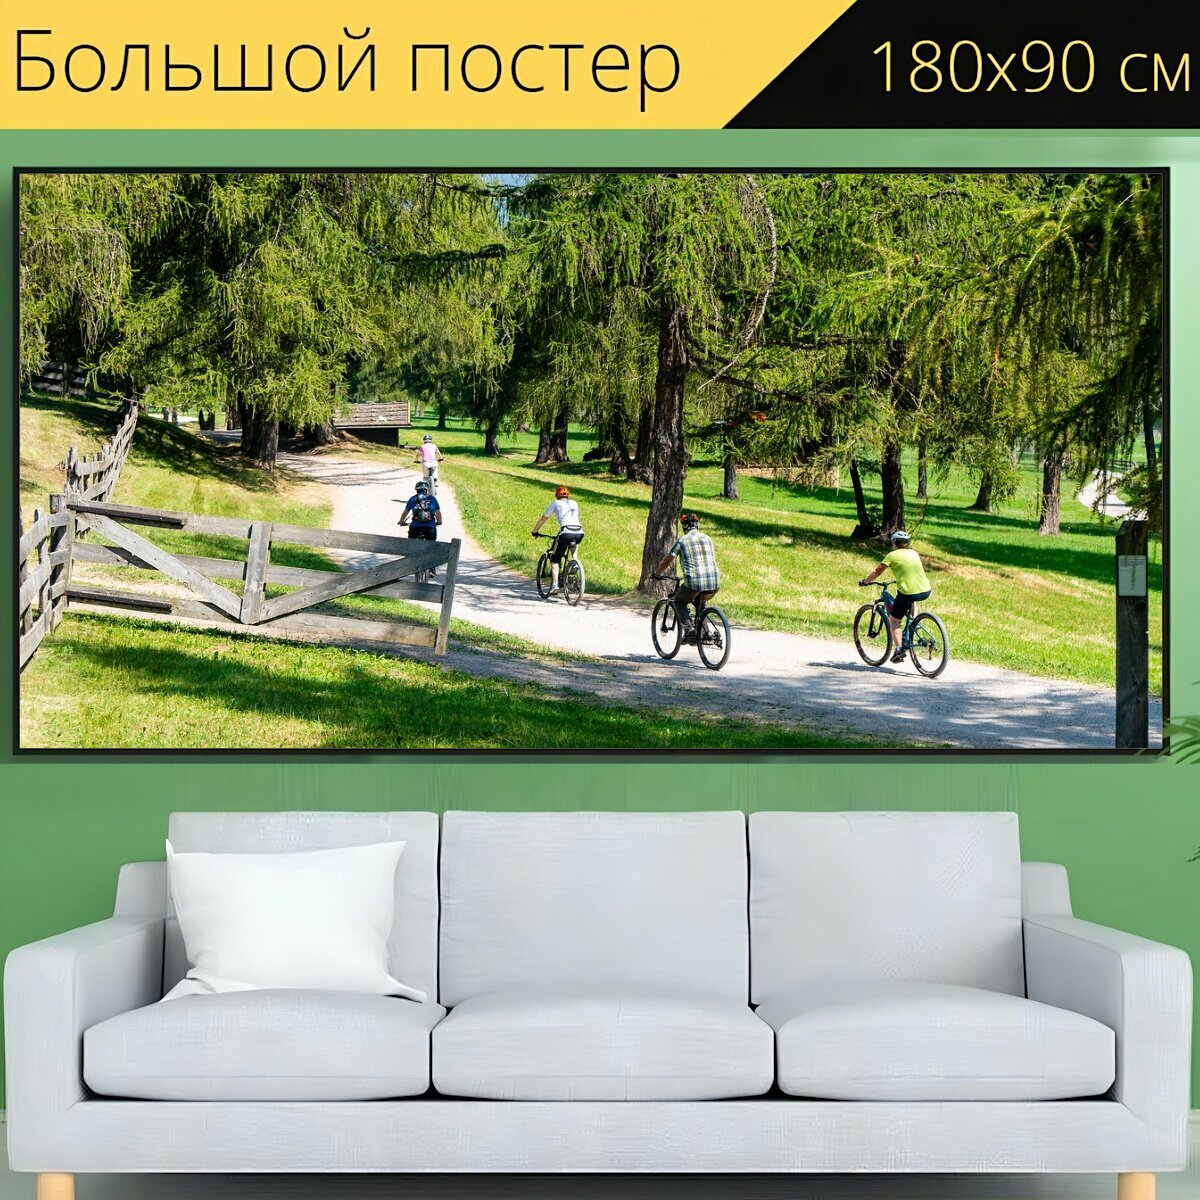 Большой постер "Кататься на велосипеде, ездить на велосипеде, колесо" 180 x 90 см. для интерьера